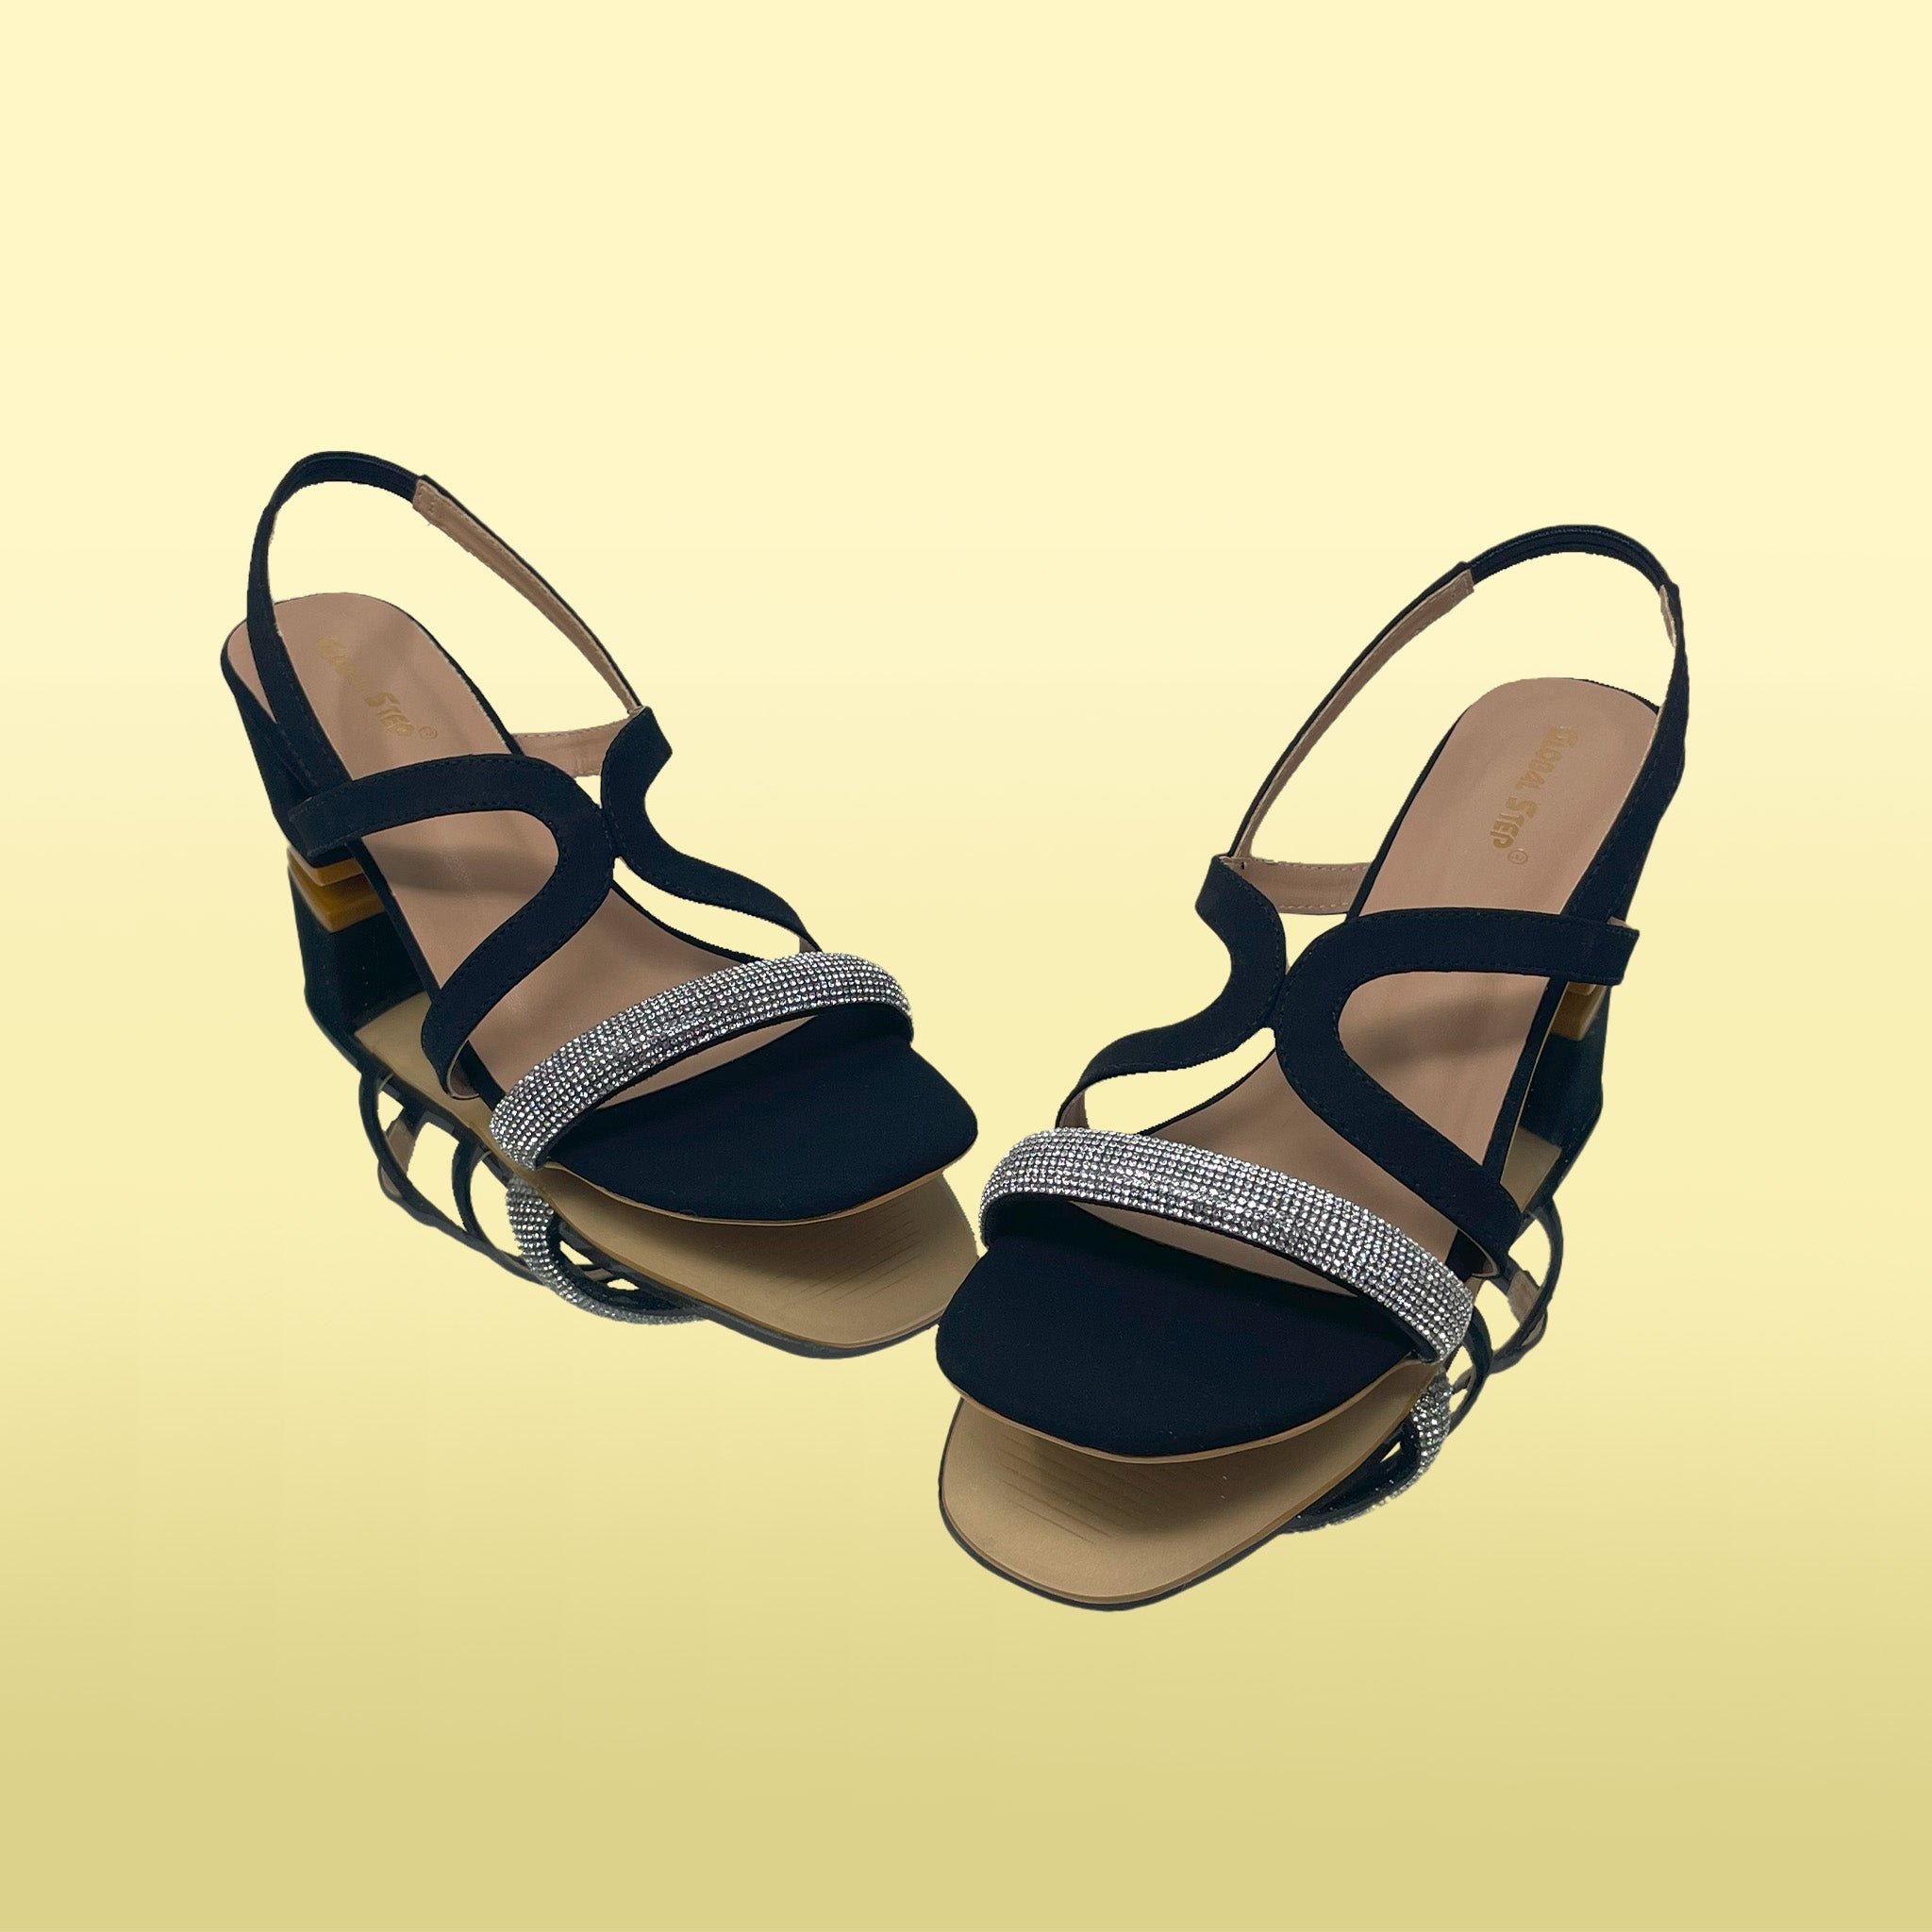 DazzleEase heels - GlobalStep - Heels